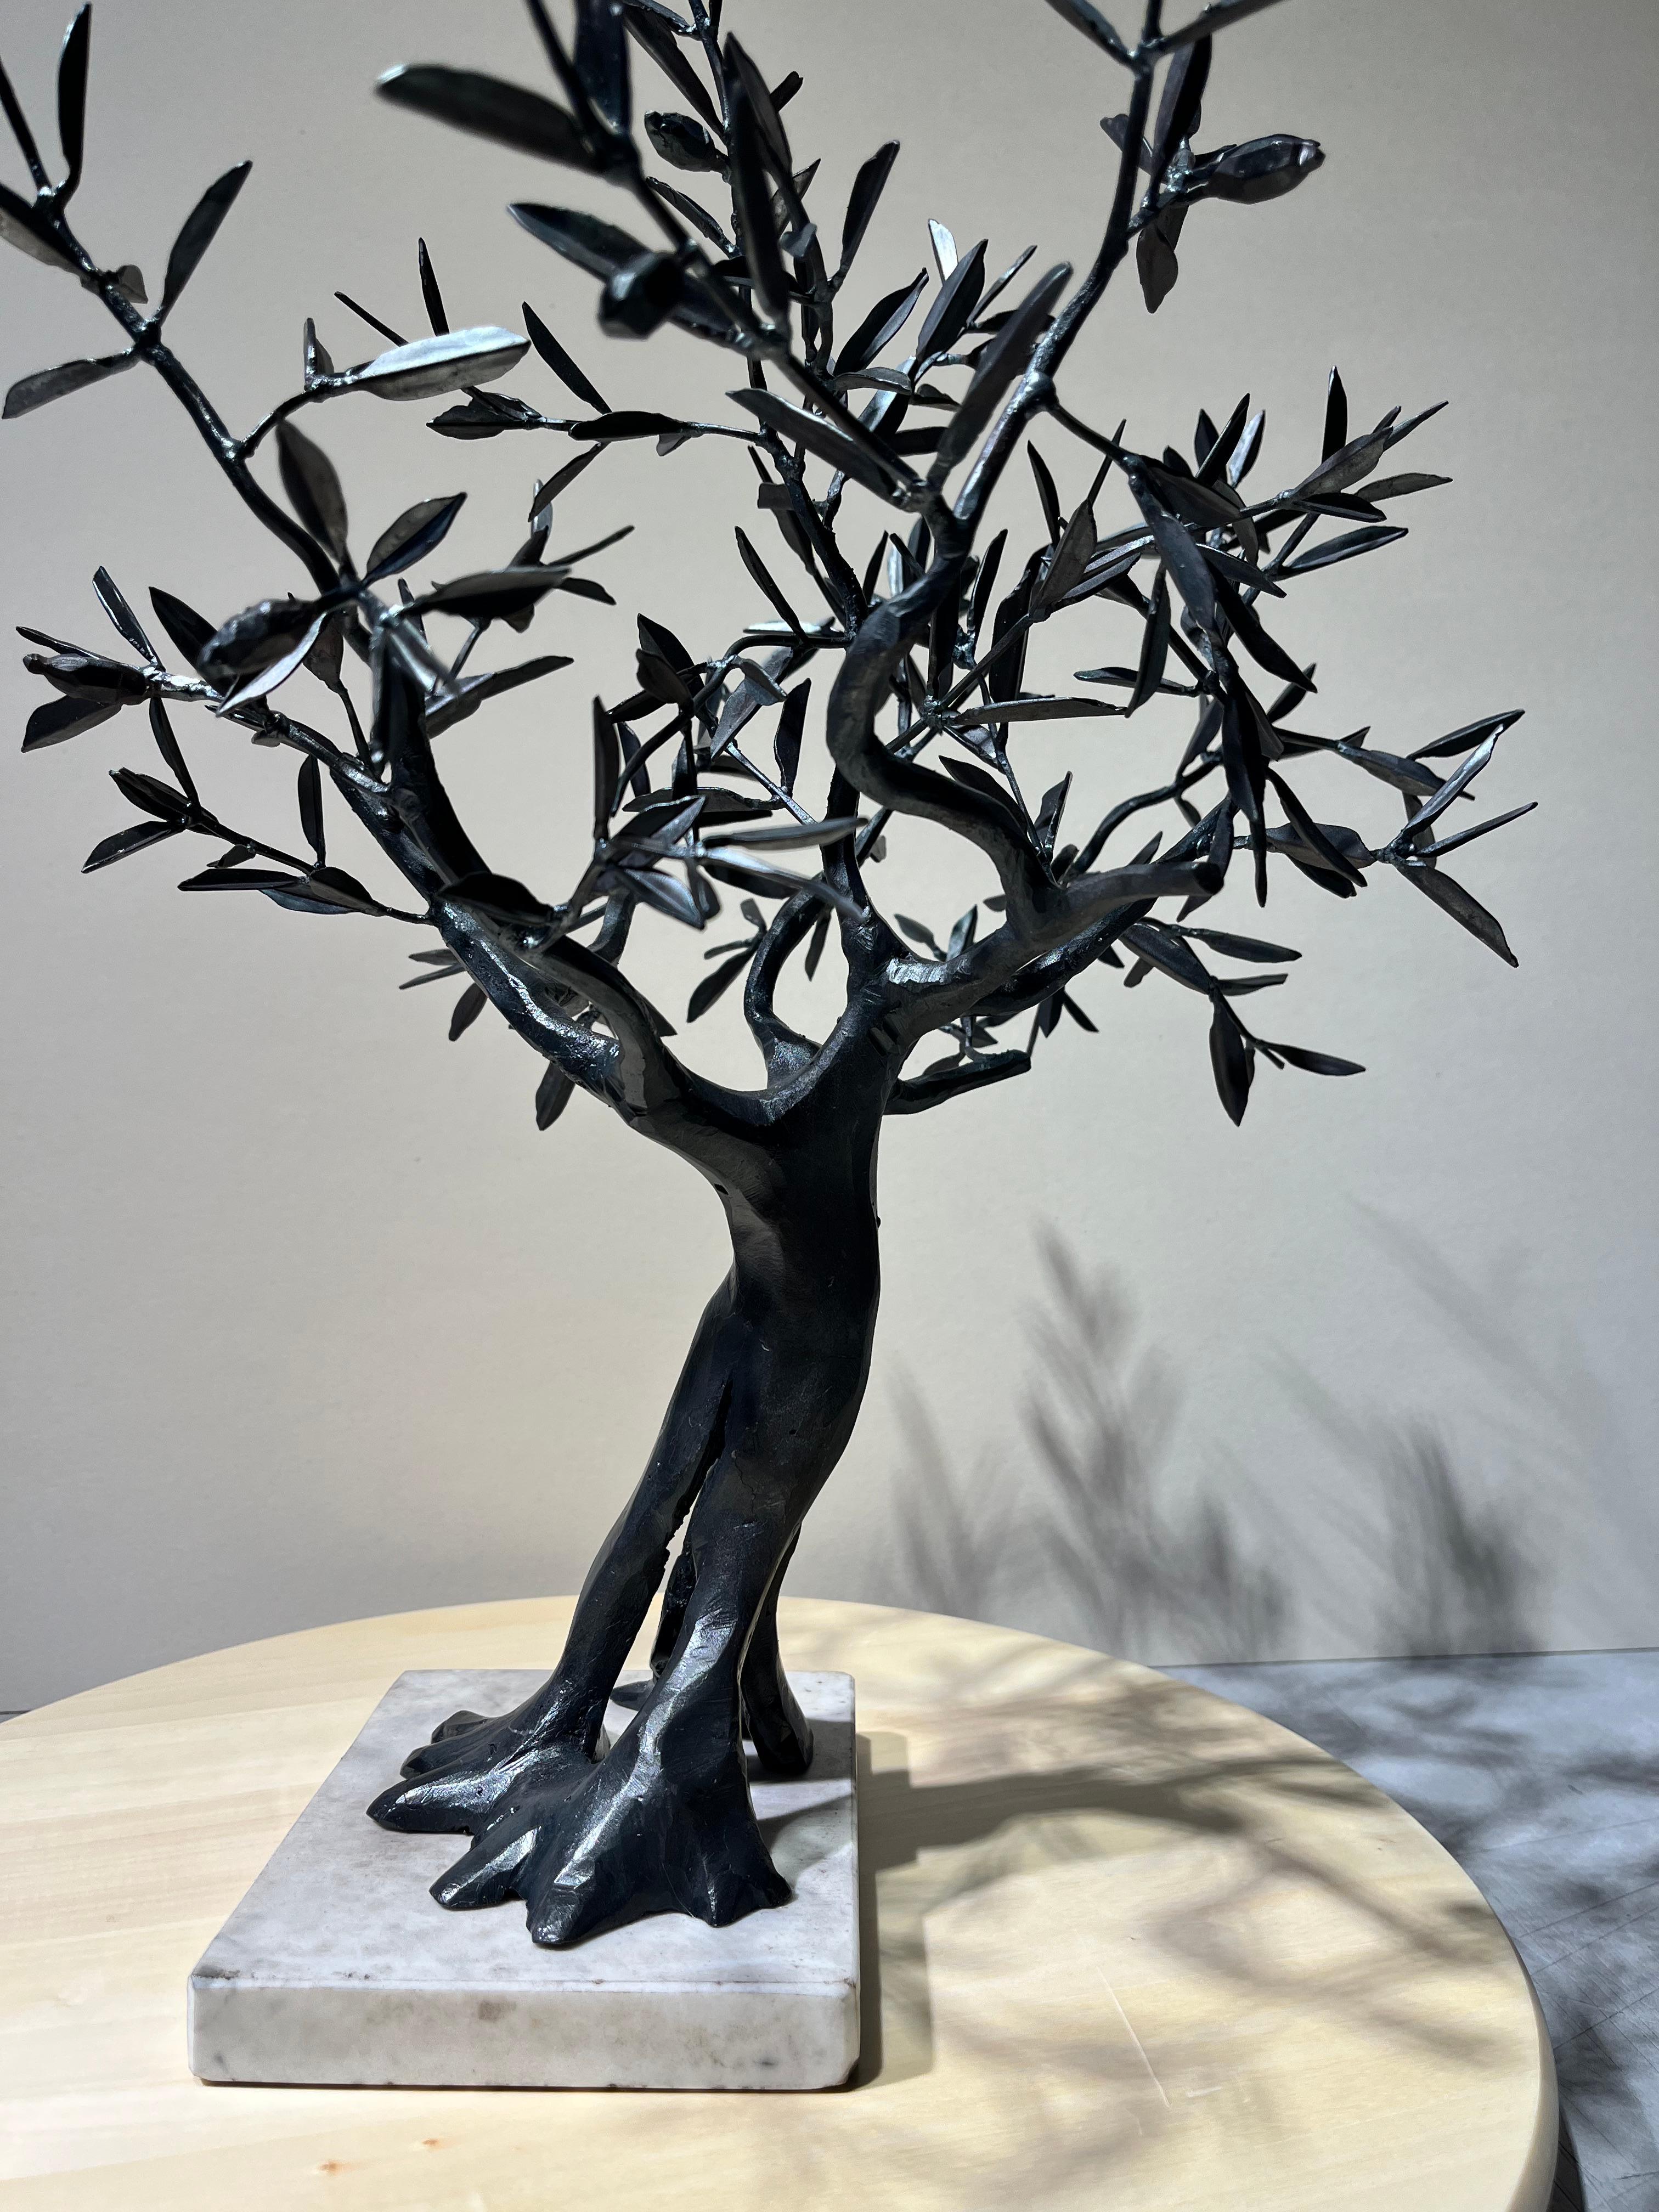 Arbre Bonsaï Ulive sculpture en fer forgé noir par un maître italien - Sculpture de Ivan Zanoni